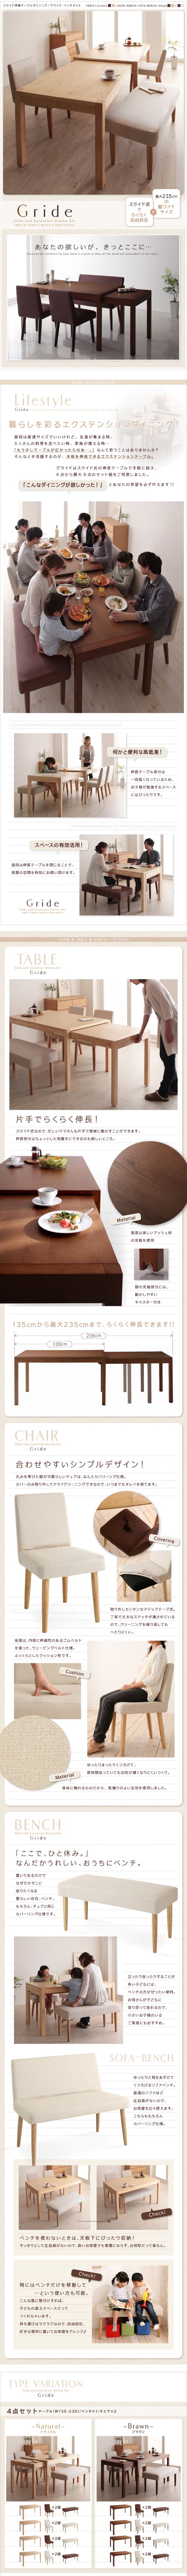 【高品質100%新品】ベンチ 2P (単品) スライド伸縮テーブルダイニング Gride グライド ダイニングチェア